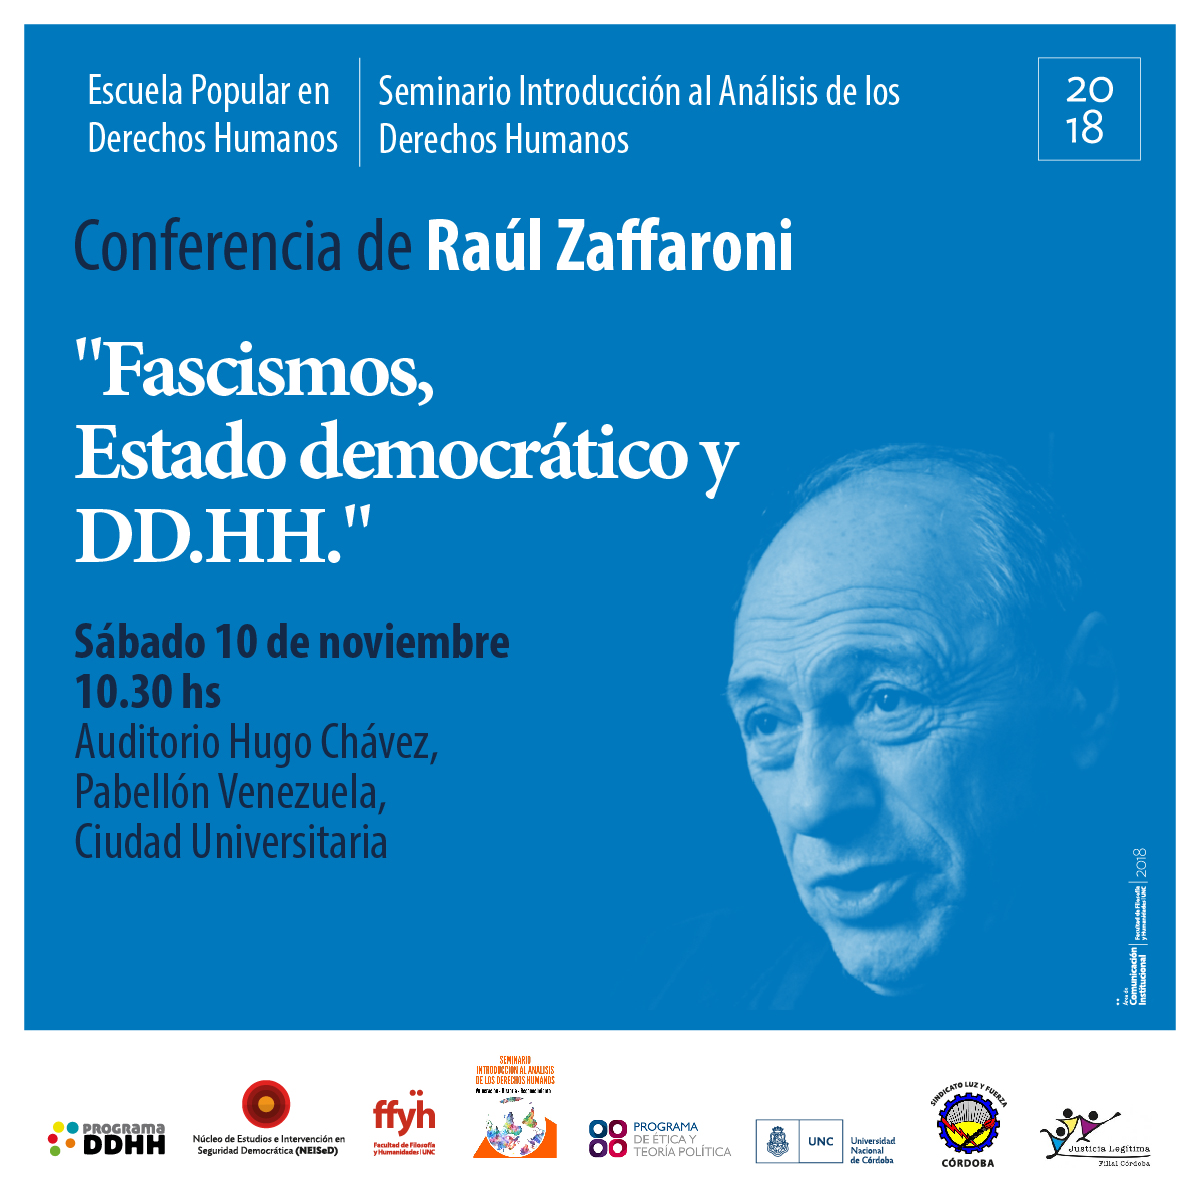 Conferencia de Raúl Zaffaroni: “Fascismos, Estado democrático y DD.HH.”